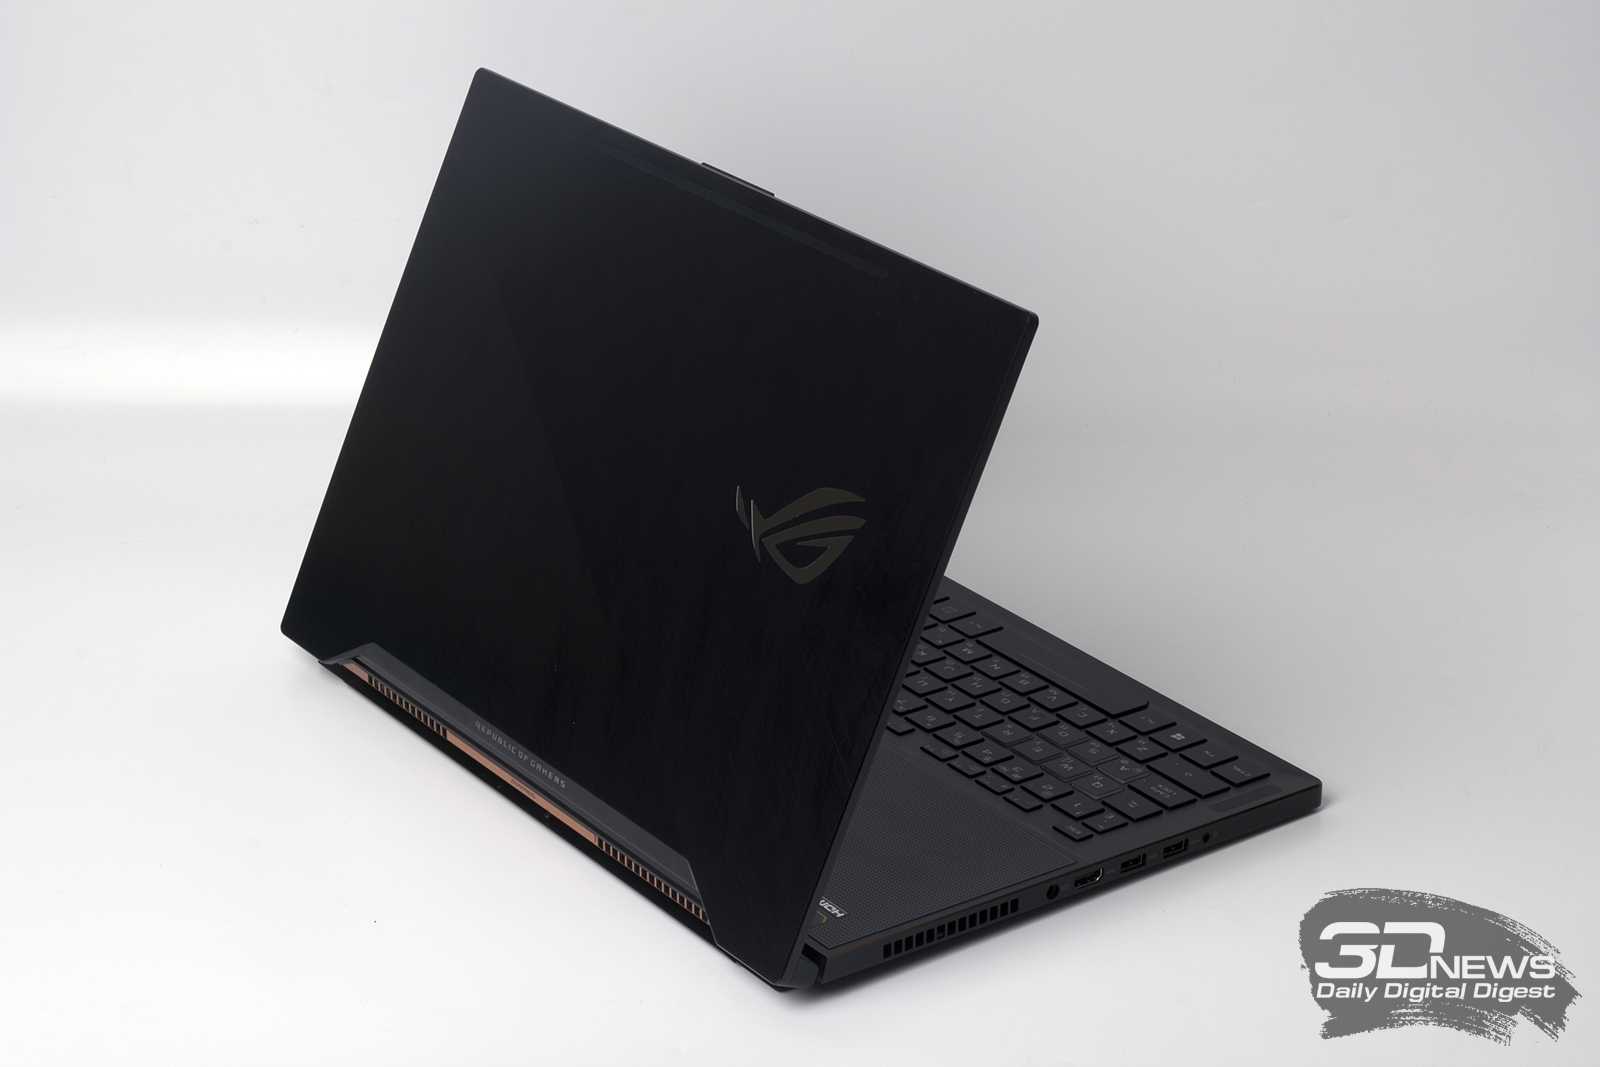 Ноутбук Asus ROG Zephyrus GX501VS (GX501VS-XS71) - подробные характеристики обзоры видео фото Цены в интернет-магазинах где можно купить ноутбук Asus ROG Zephyrus GX501VS (GX501VS-XS71)